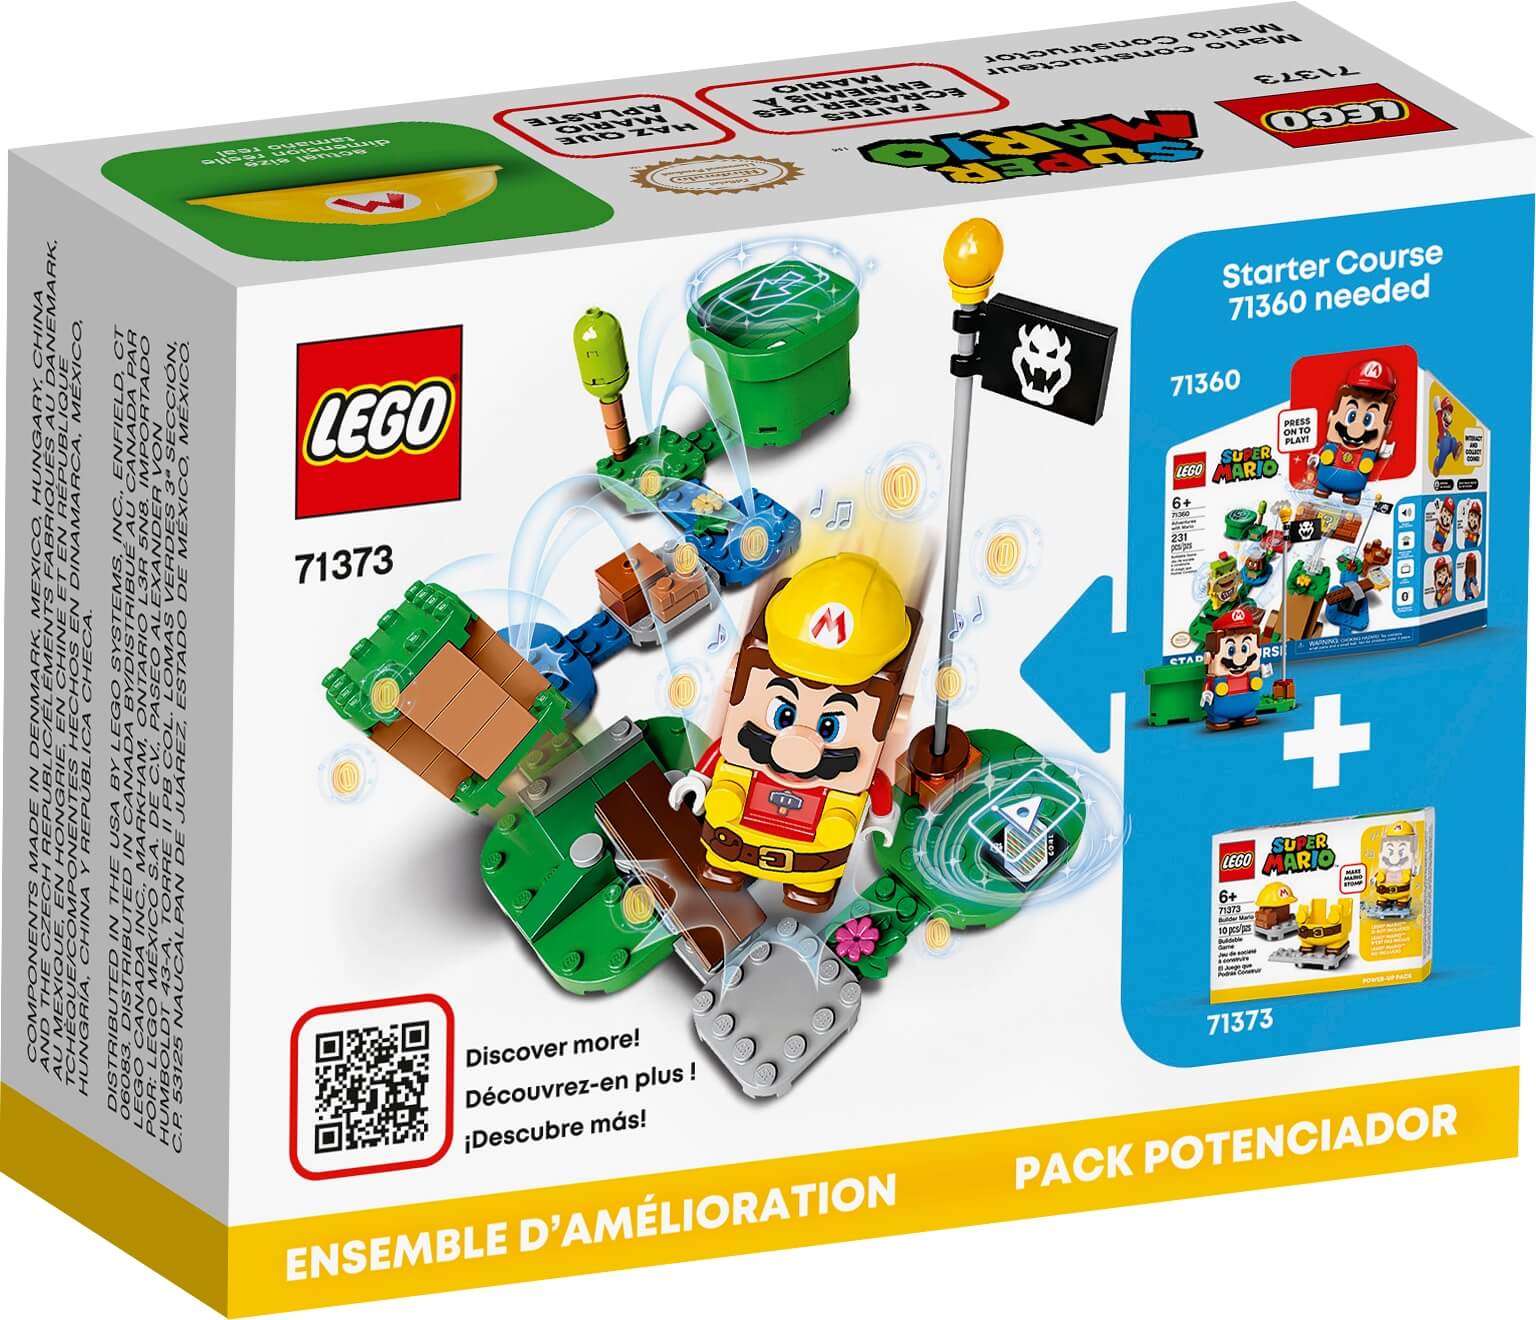 Pack Potenciador Mario Constructor ( Lego 71373 ) imagen b